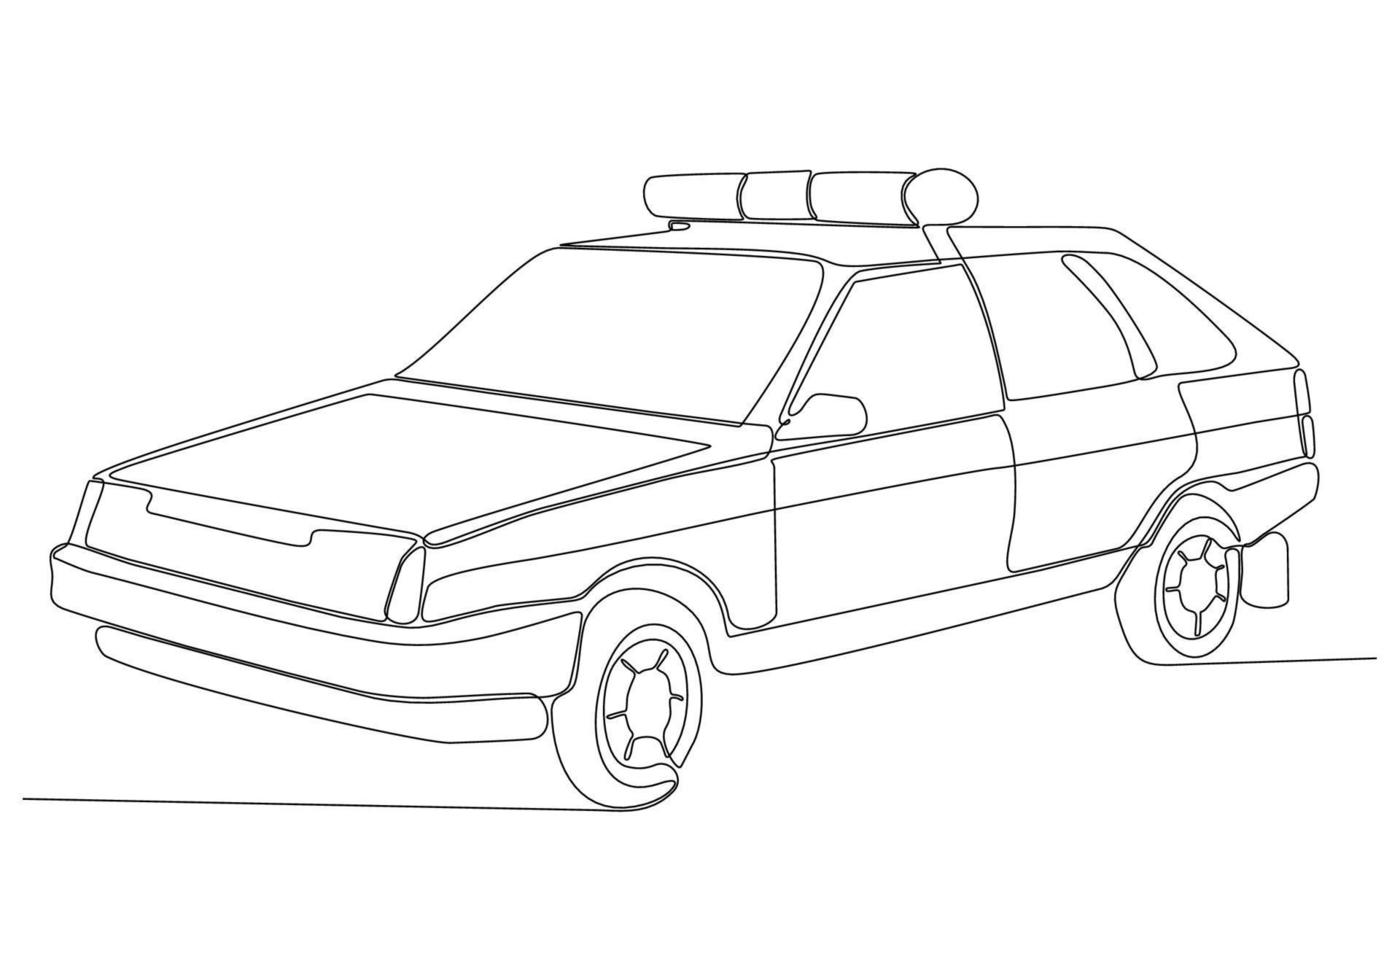 traccia una singola linea retta di un'auto della polizia. illustrazione vettoriale di un disegno grafico a una linea.